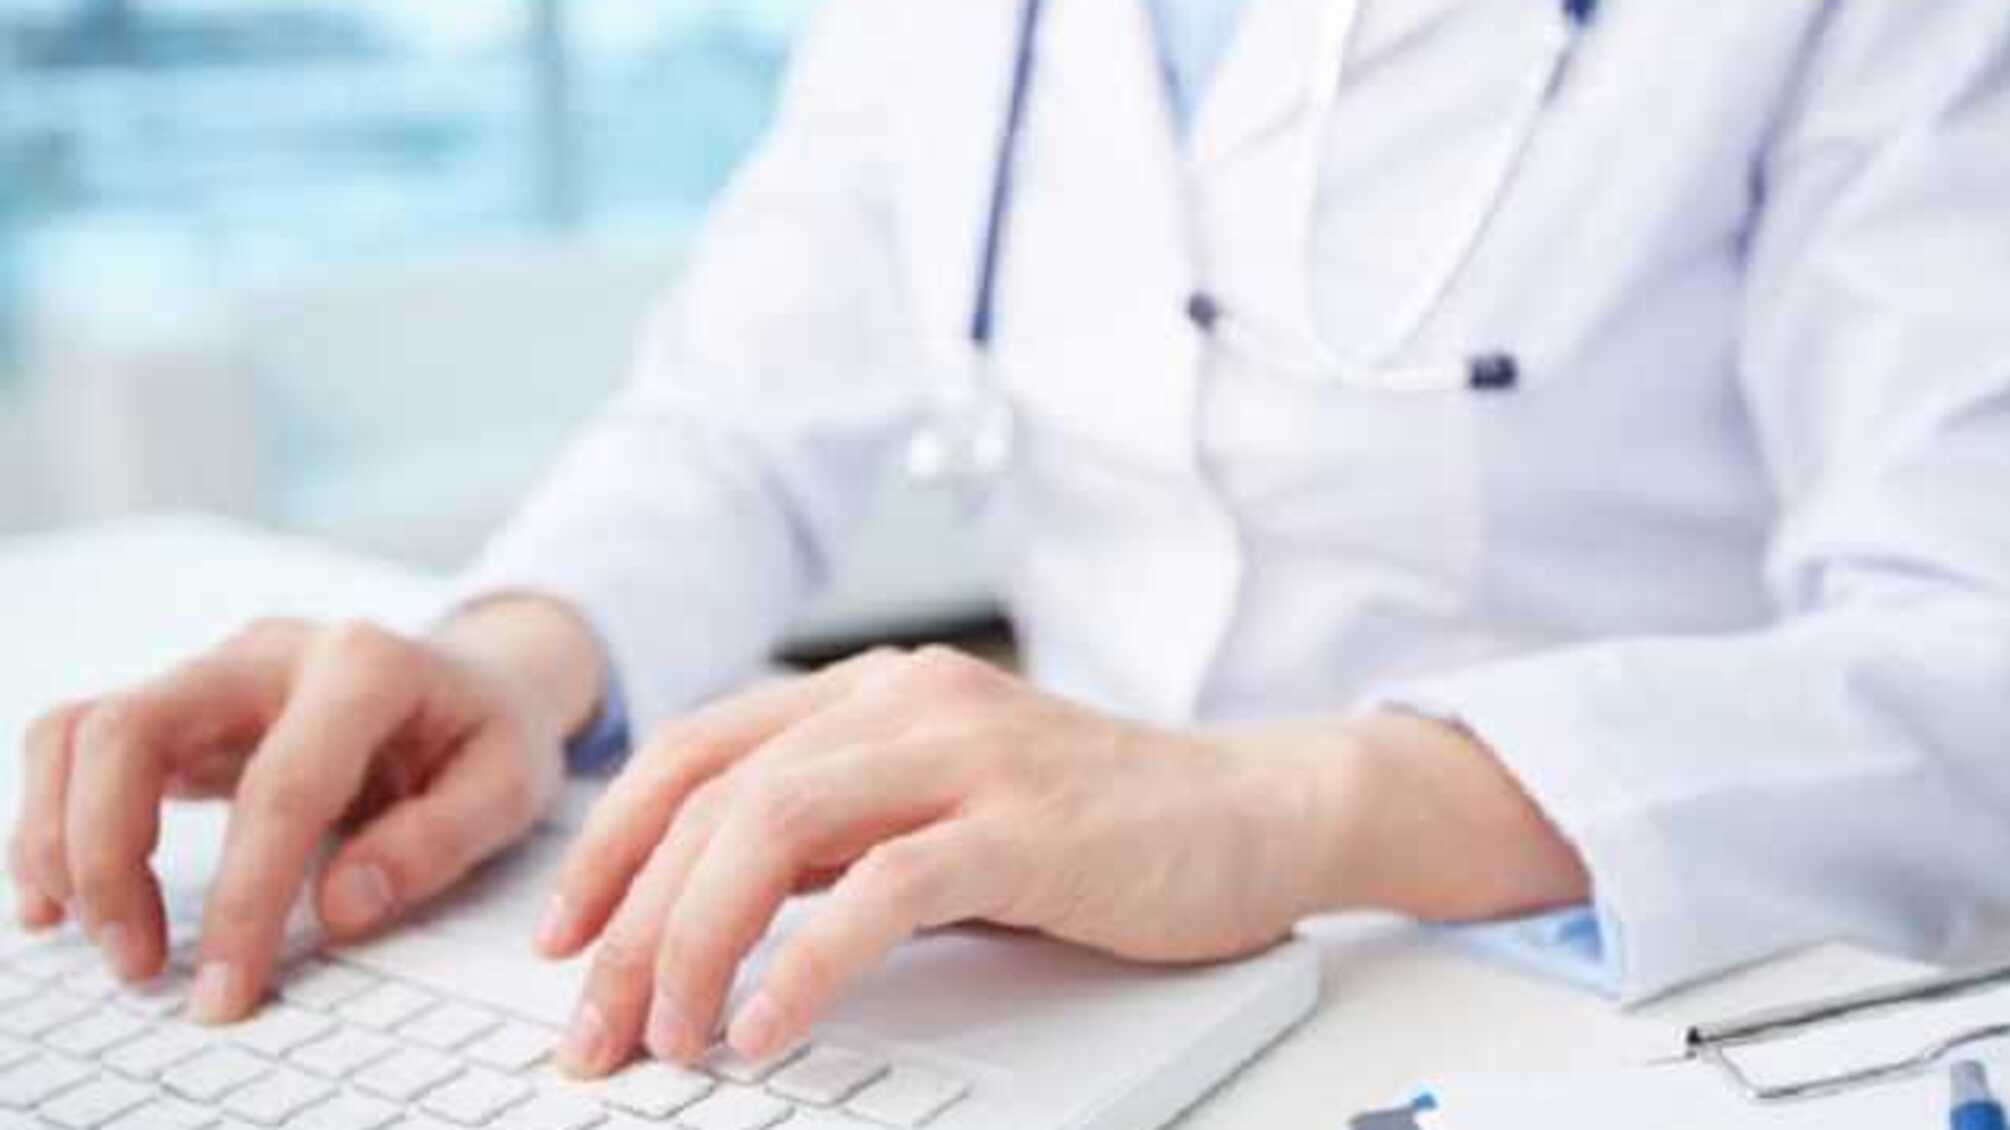 Медицинская школа бесплатно проводит обучение врачей онлайн